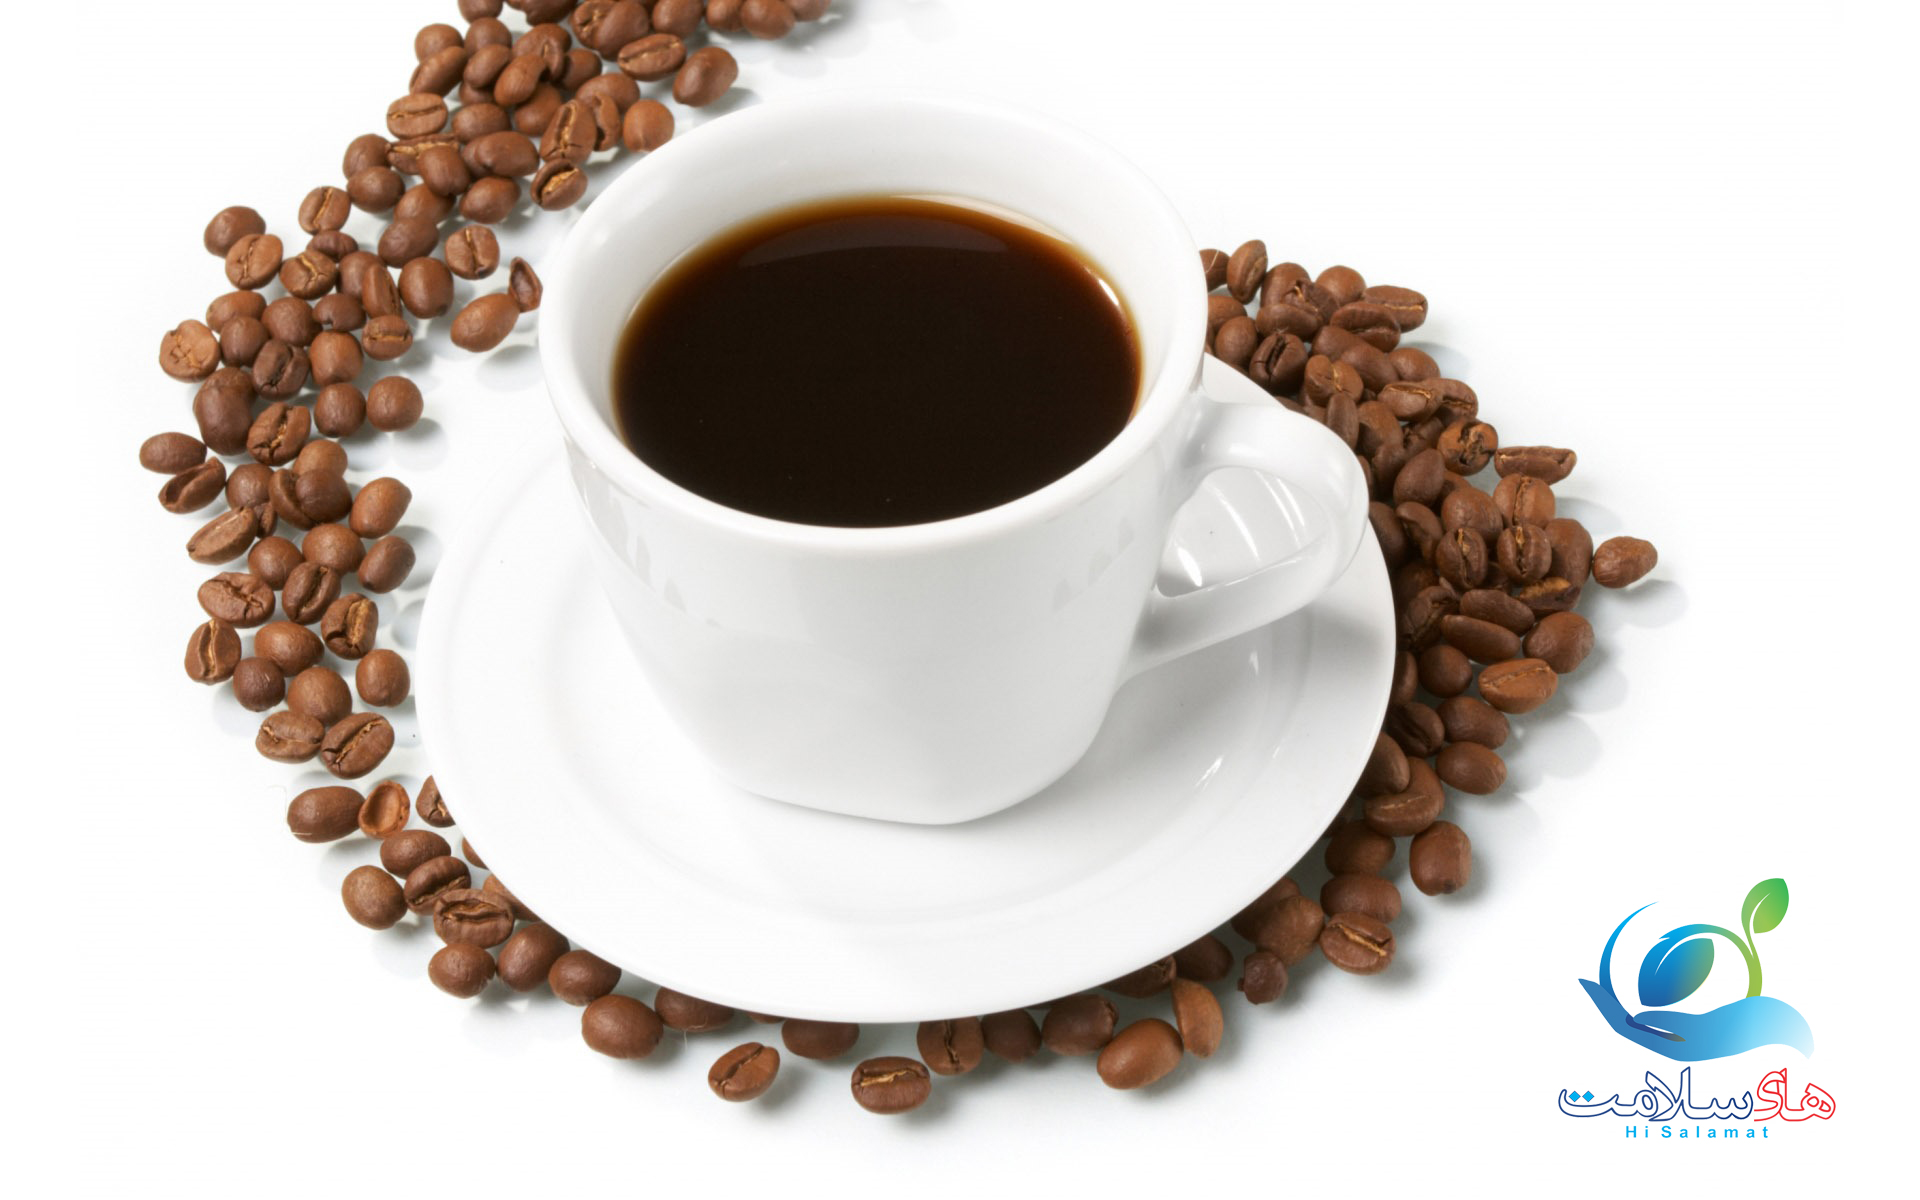  چرا قهوه برای شما مناسب است؟ در اینجا 7 دلیل وجود دارد.